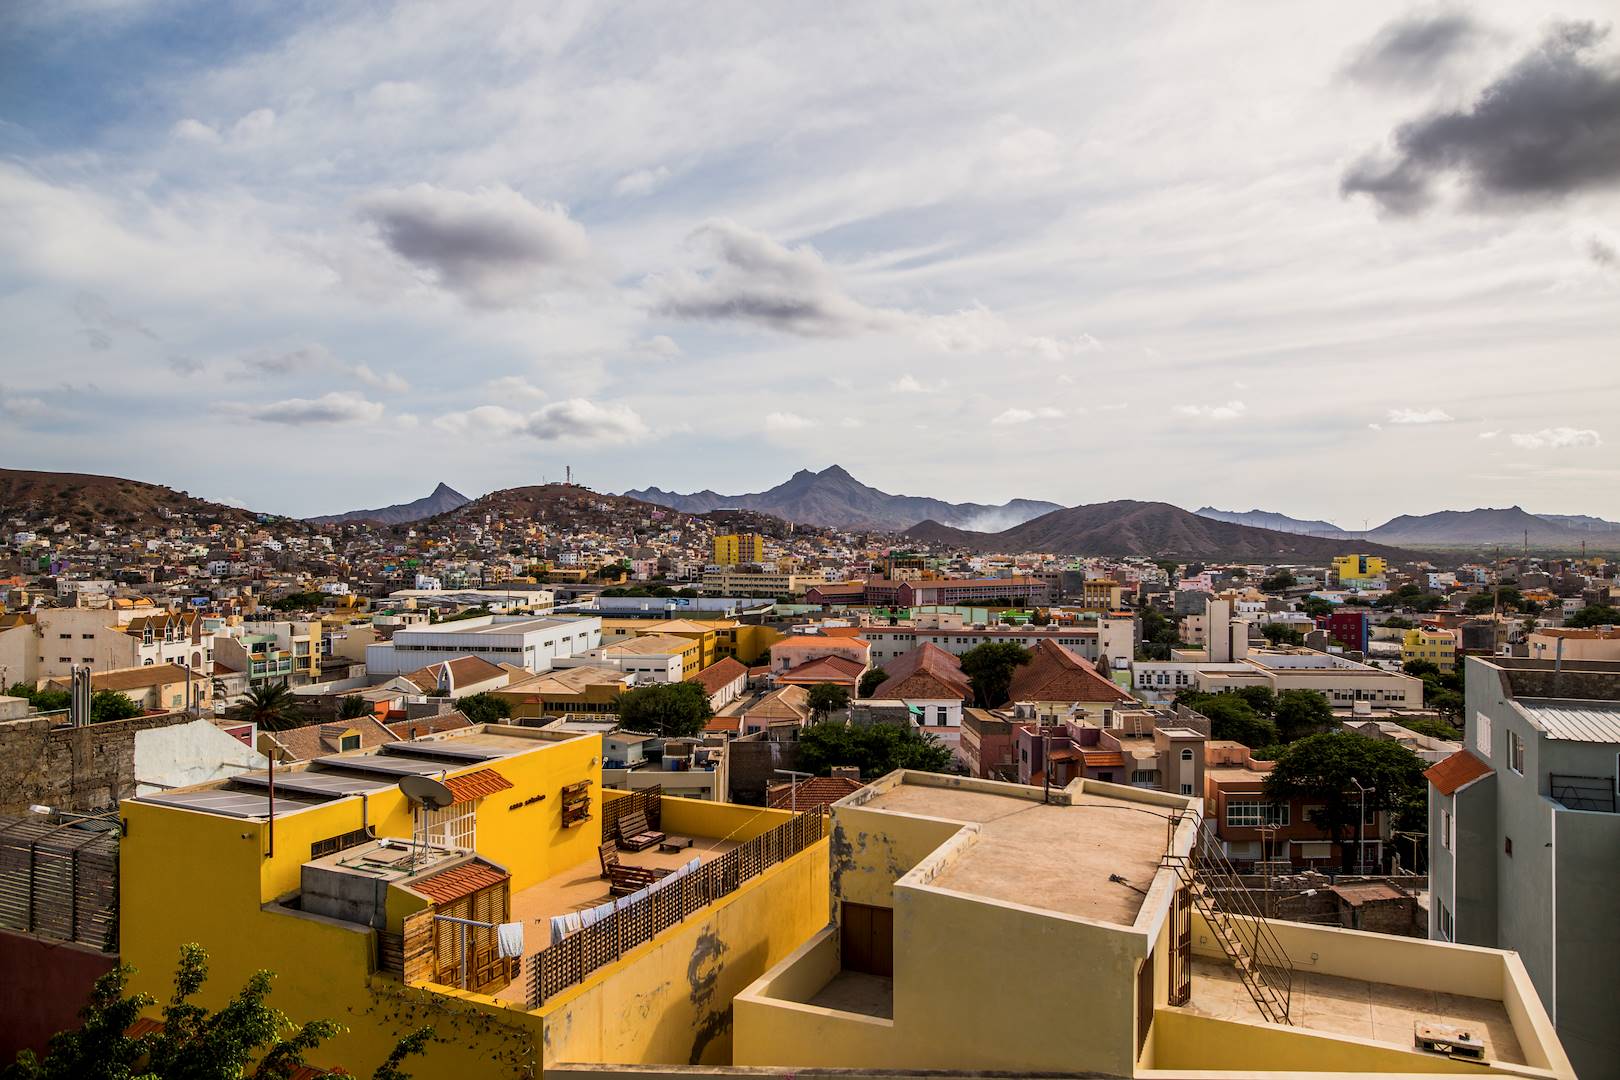 Vue d'ensemble sur la ville depuis la terrasse d'un bar - Mindelo - Île de Sao Vicente - Cap Vert